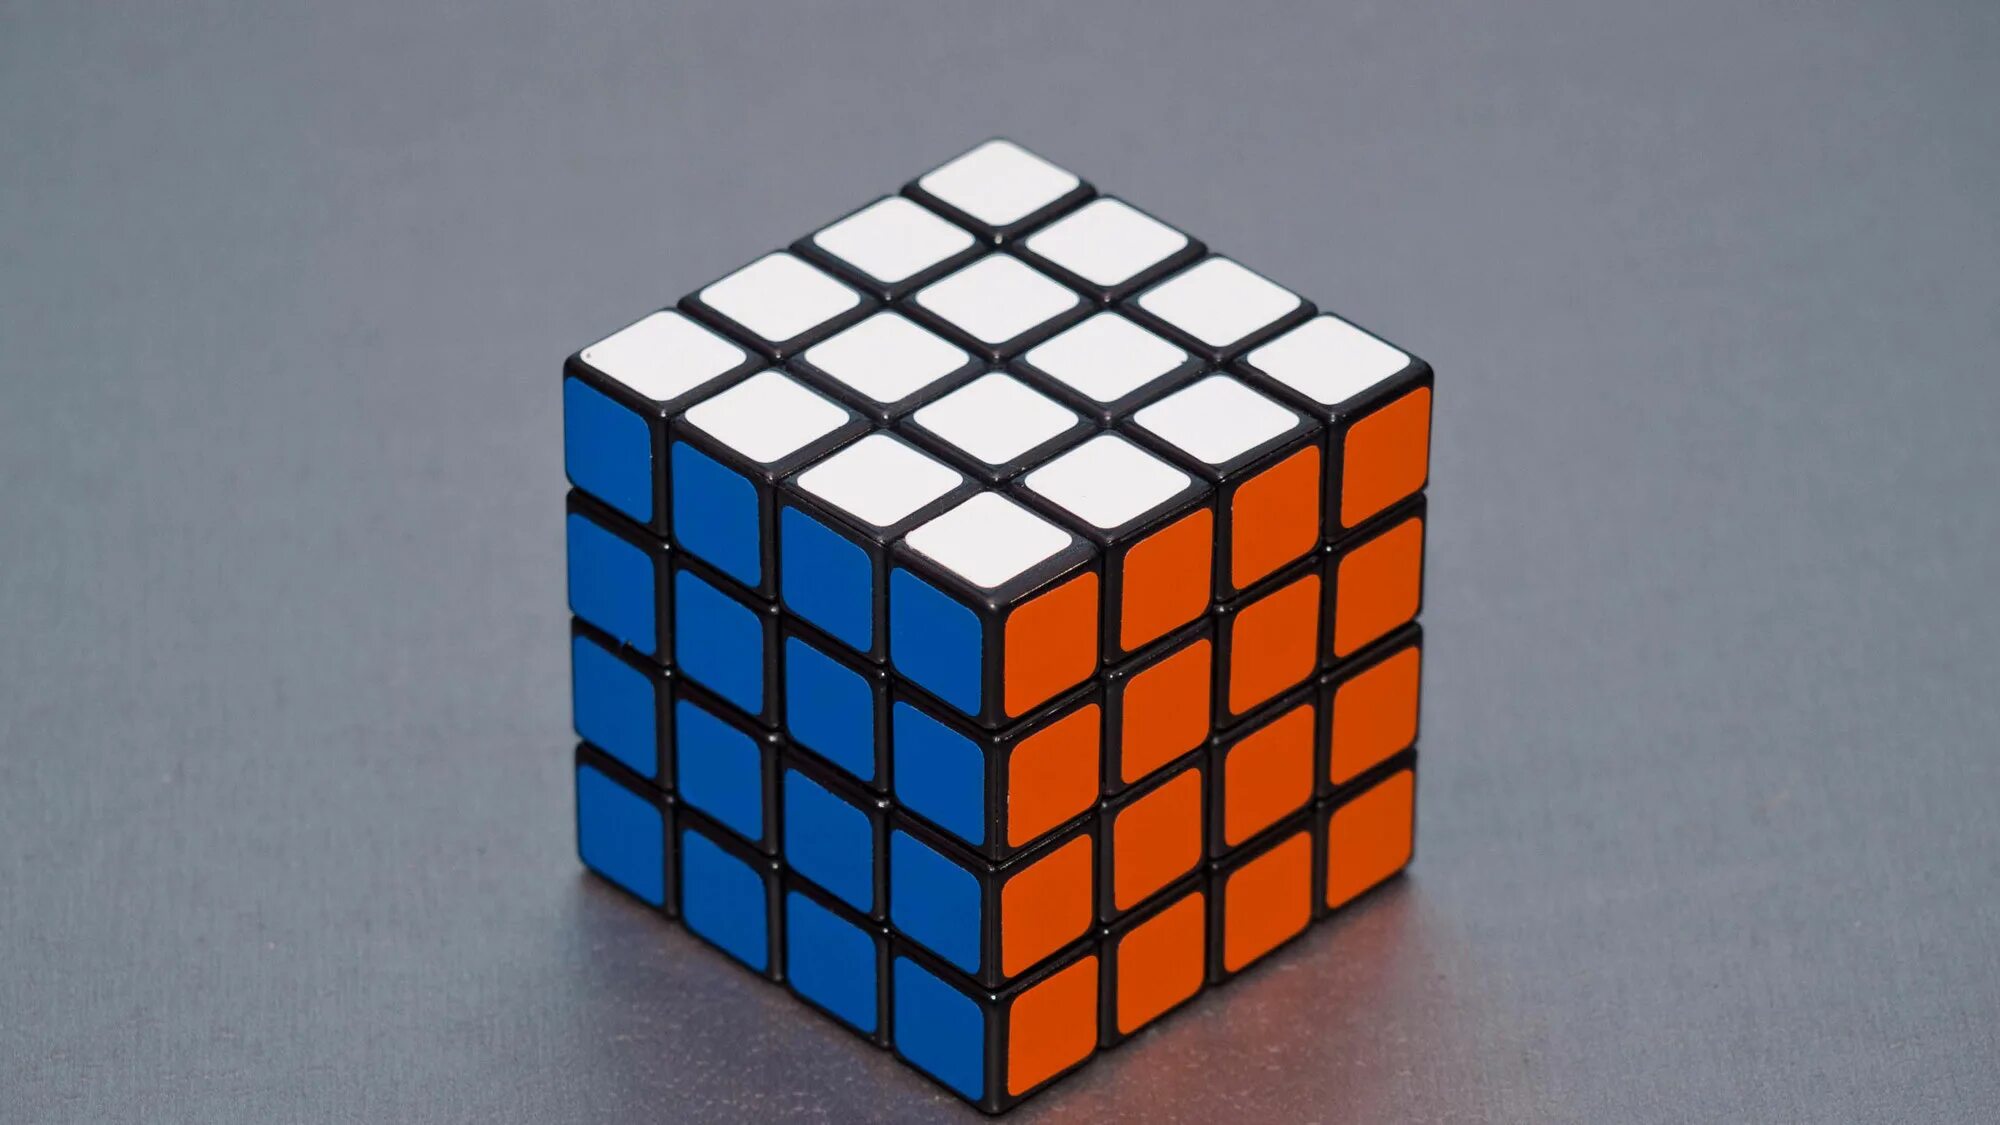 Рубик 4 4. Кубик Рубика 4*4. Куб 4х4х4. Зеркальный кубик Рубика 4х4. Кубик Рубика 4х4 Gen.